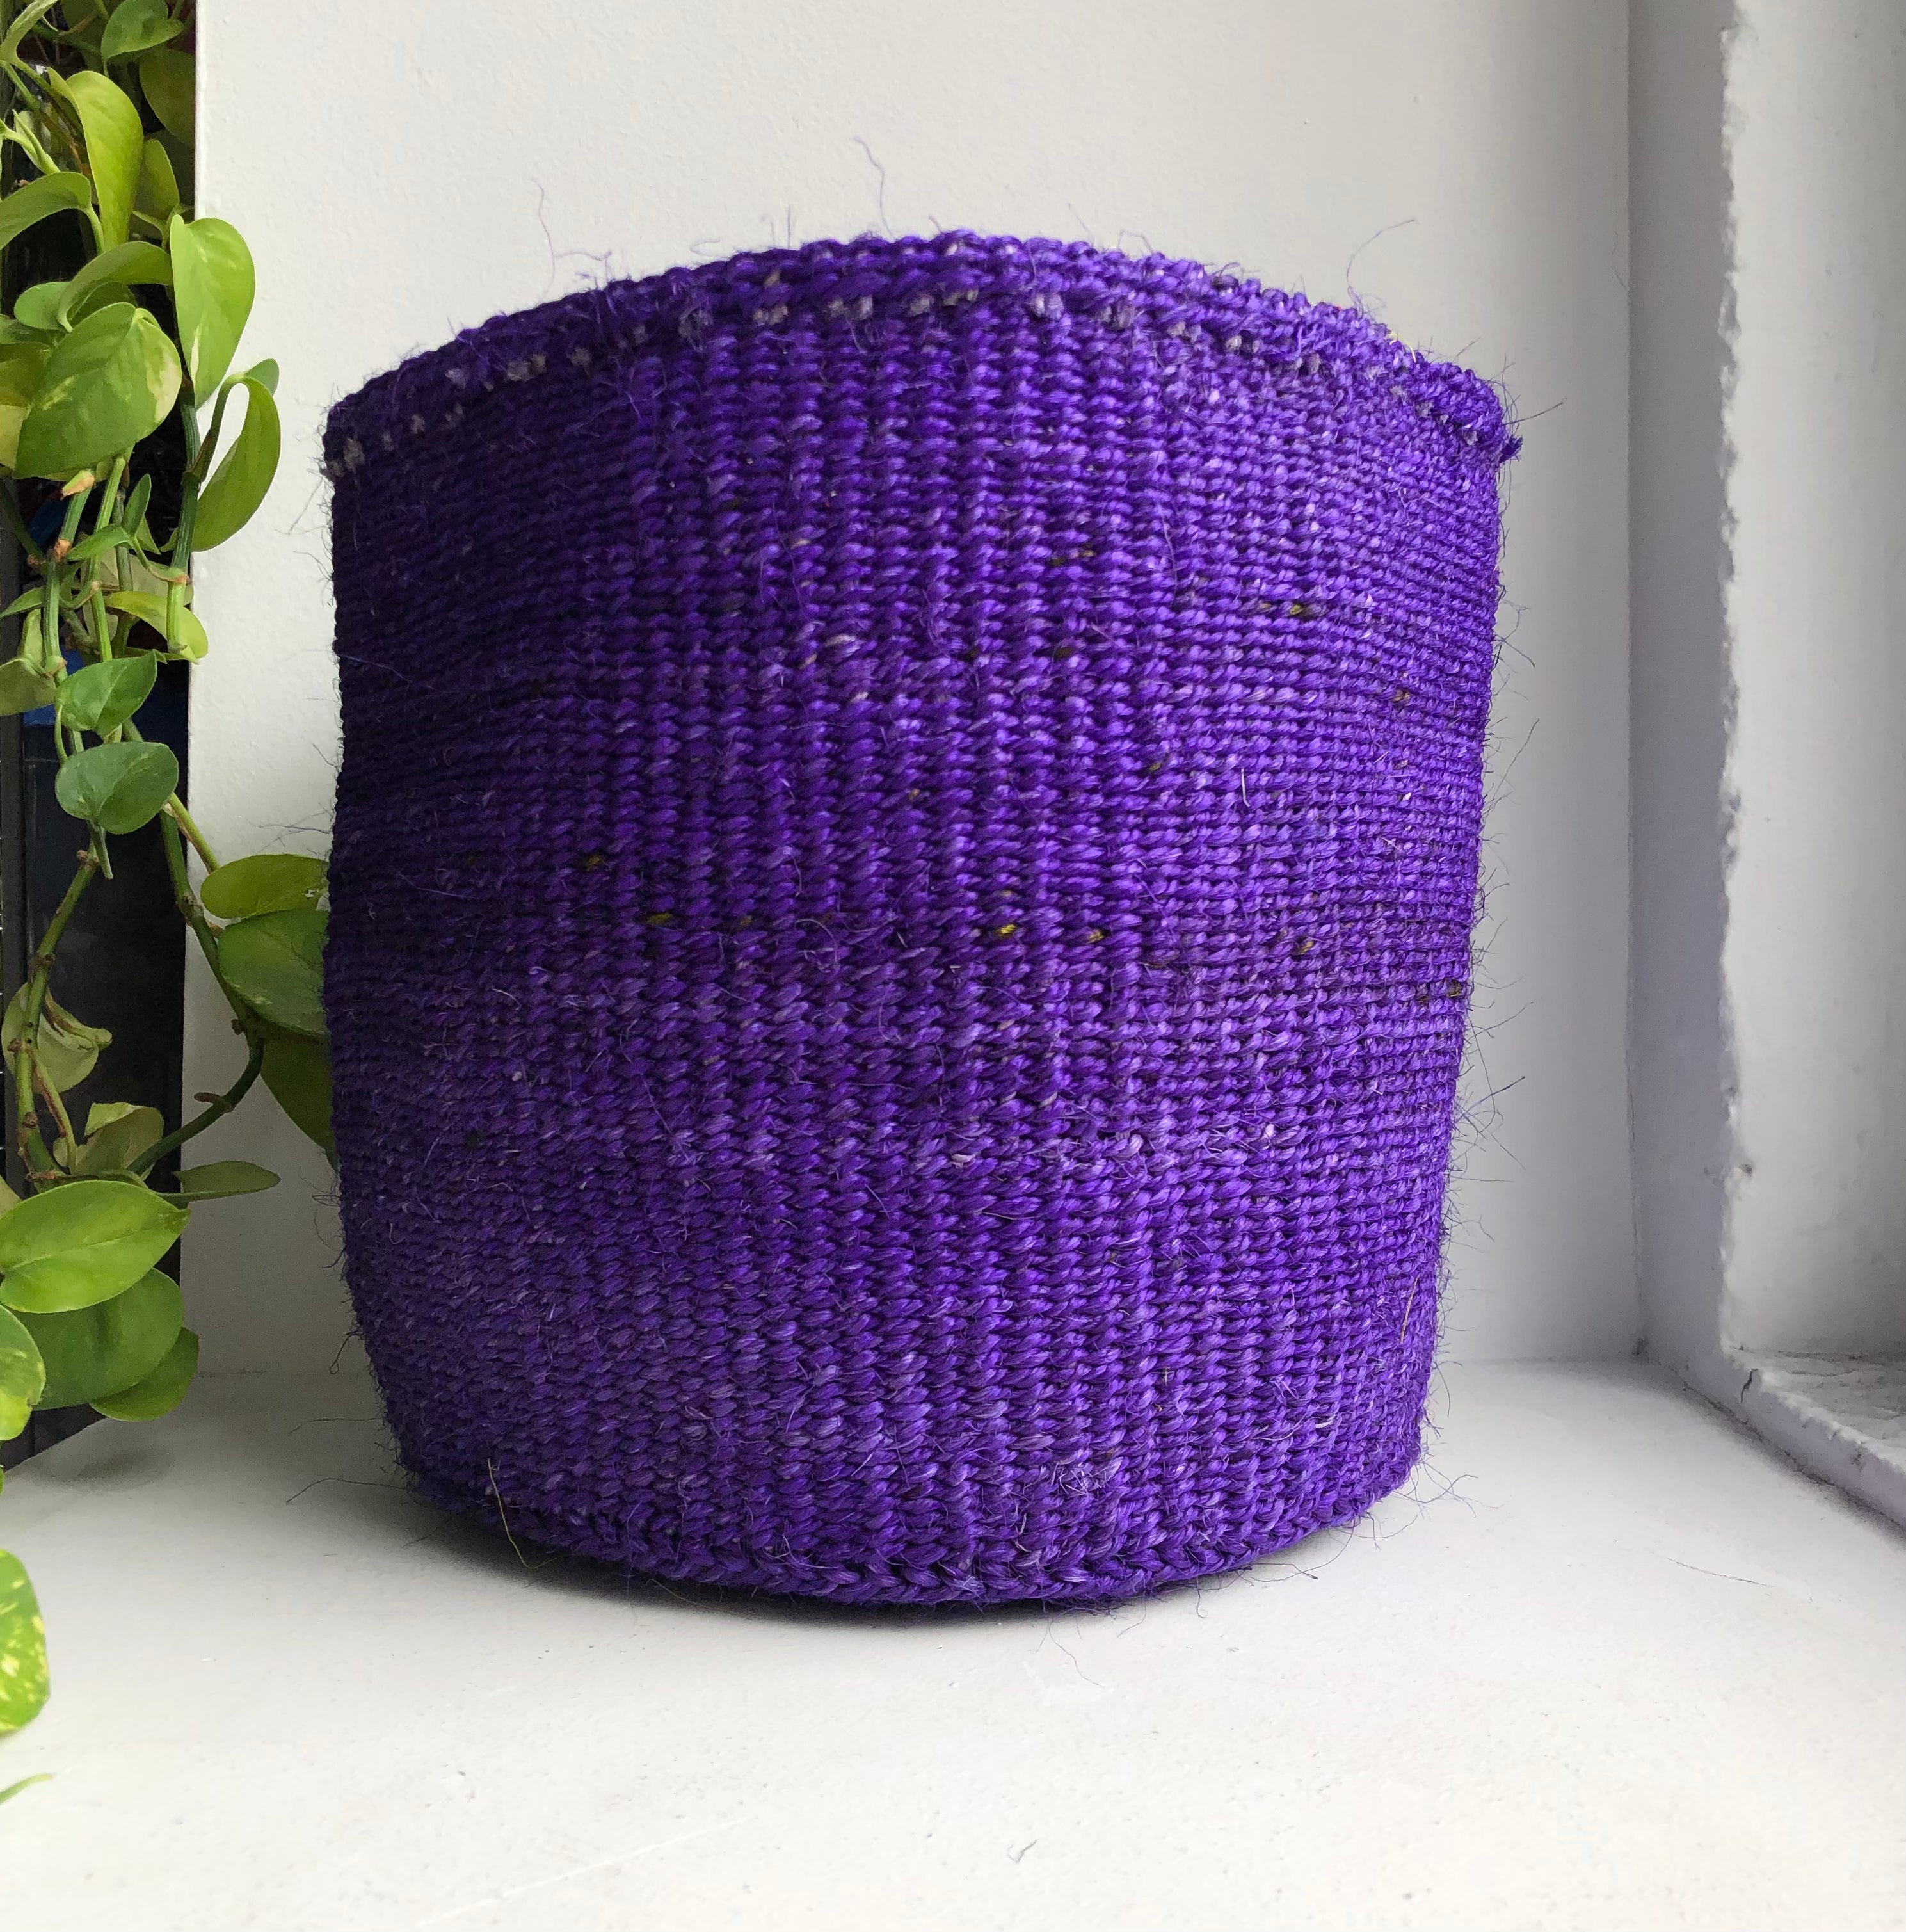 display of 10" purple basket